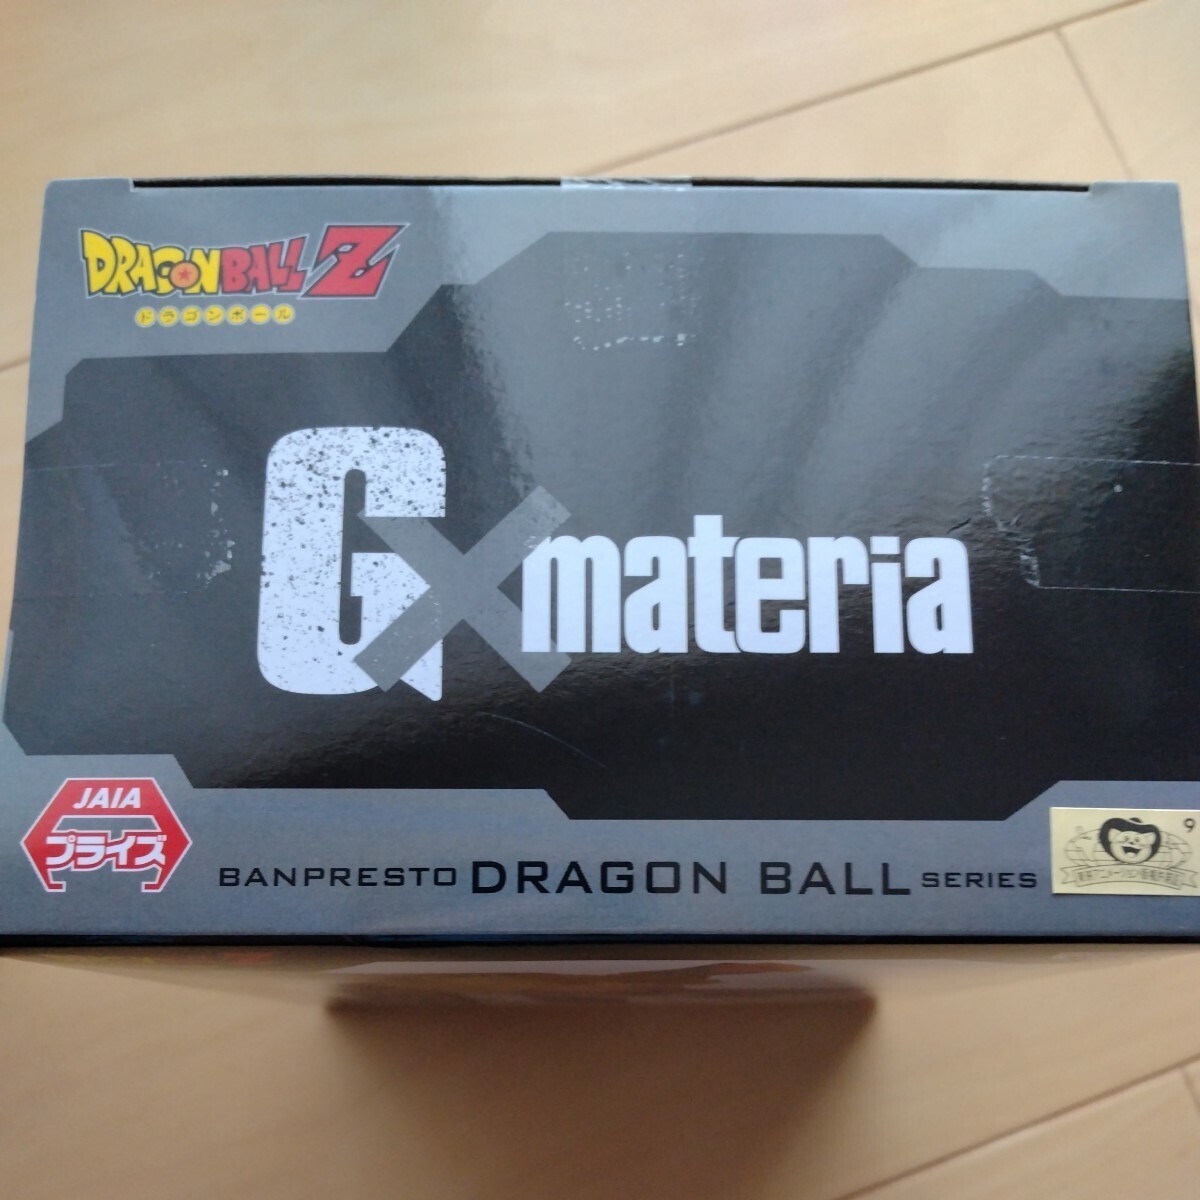 ( самый дешевый стоимость доставки, нестандартный винил пакет только 350 иен ) Dragon Ball Z ANDROID 18 номер фигурка [ доставка в пояснительном примечании .] включение в покупку возможно 